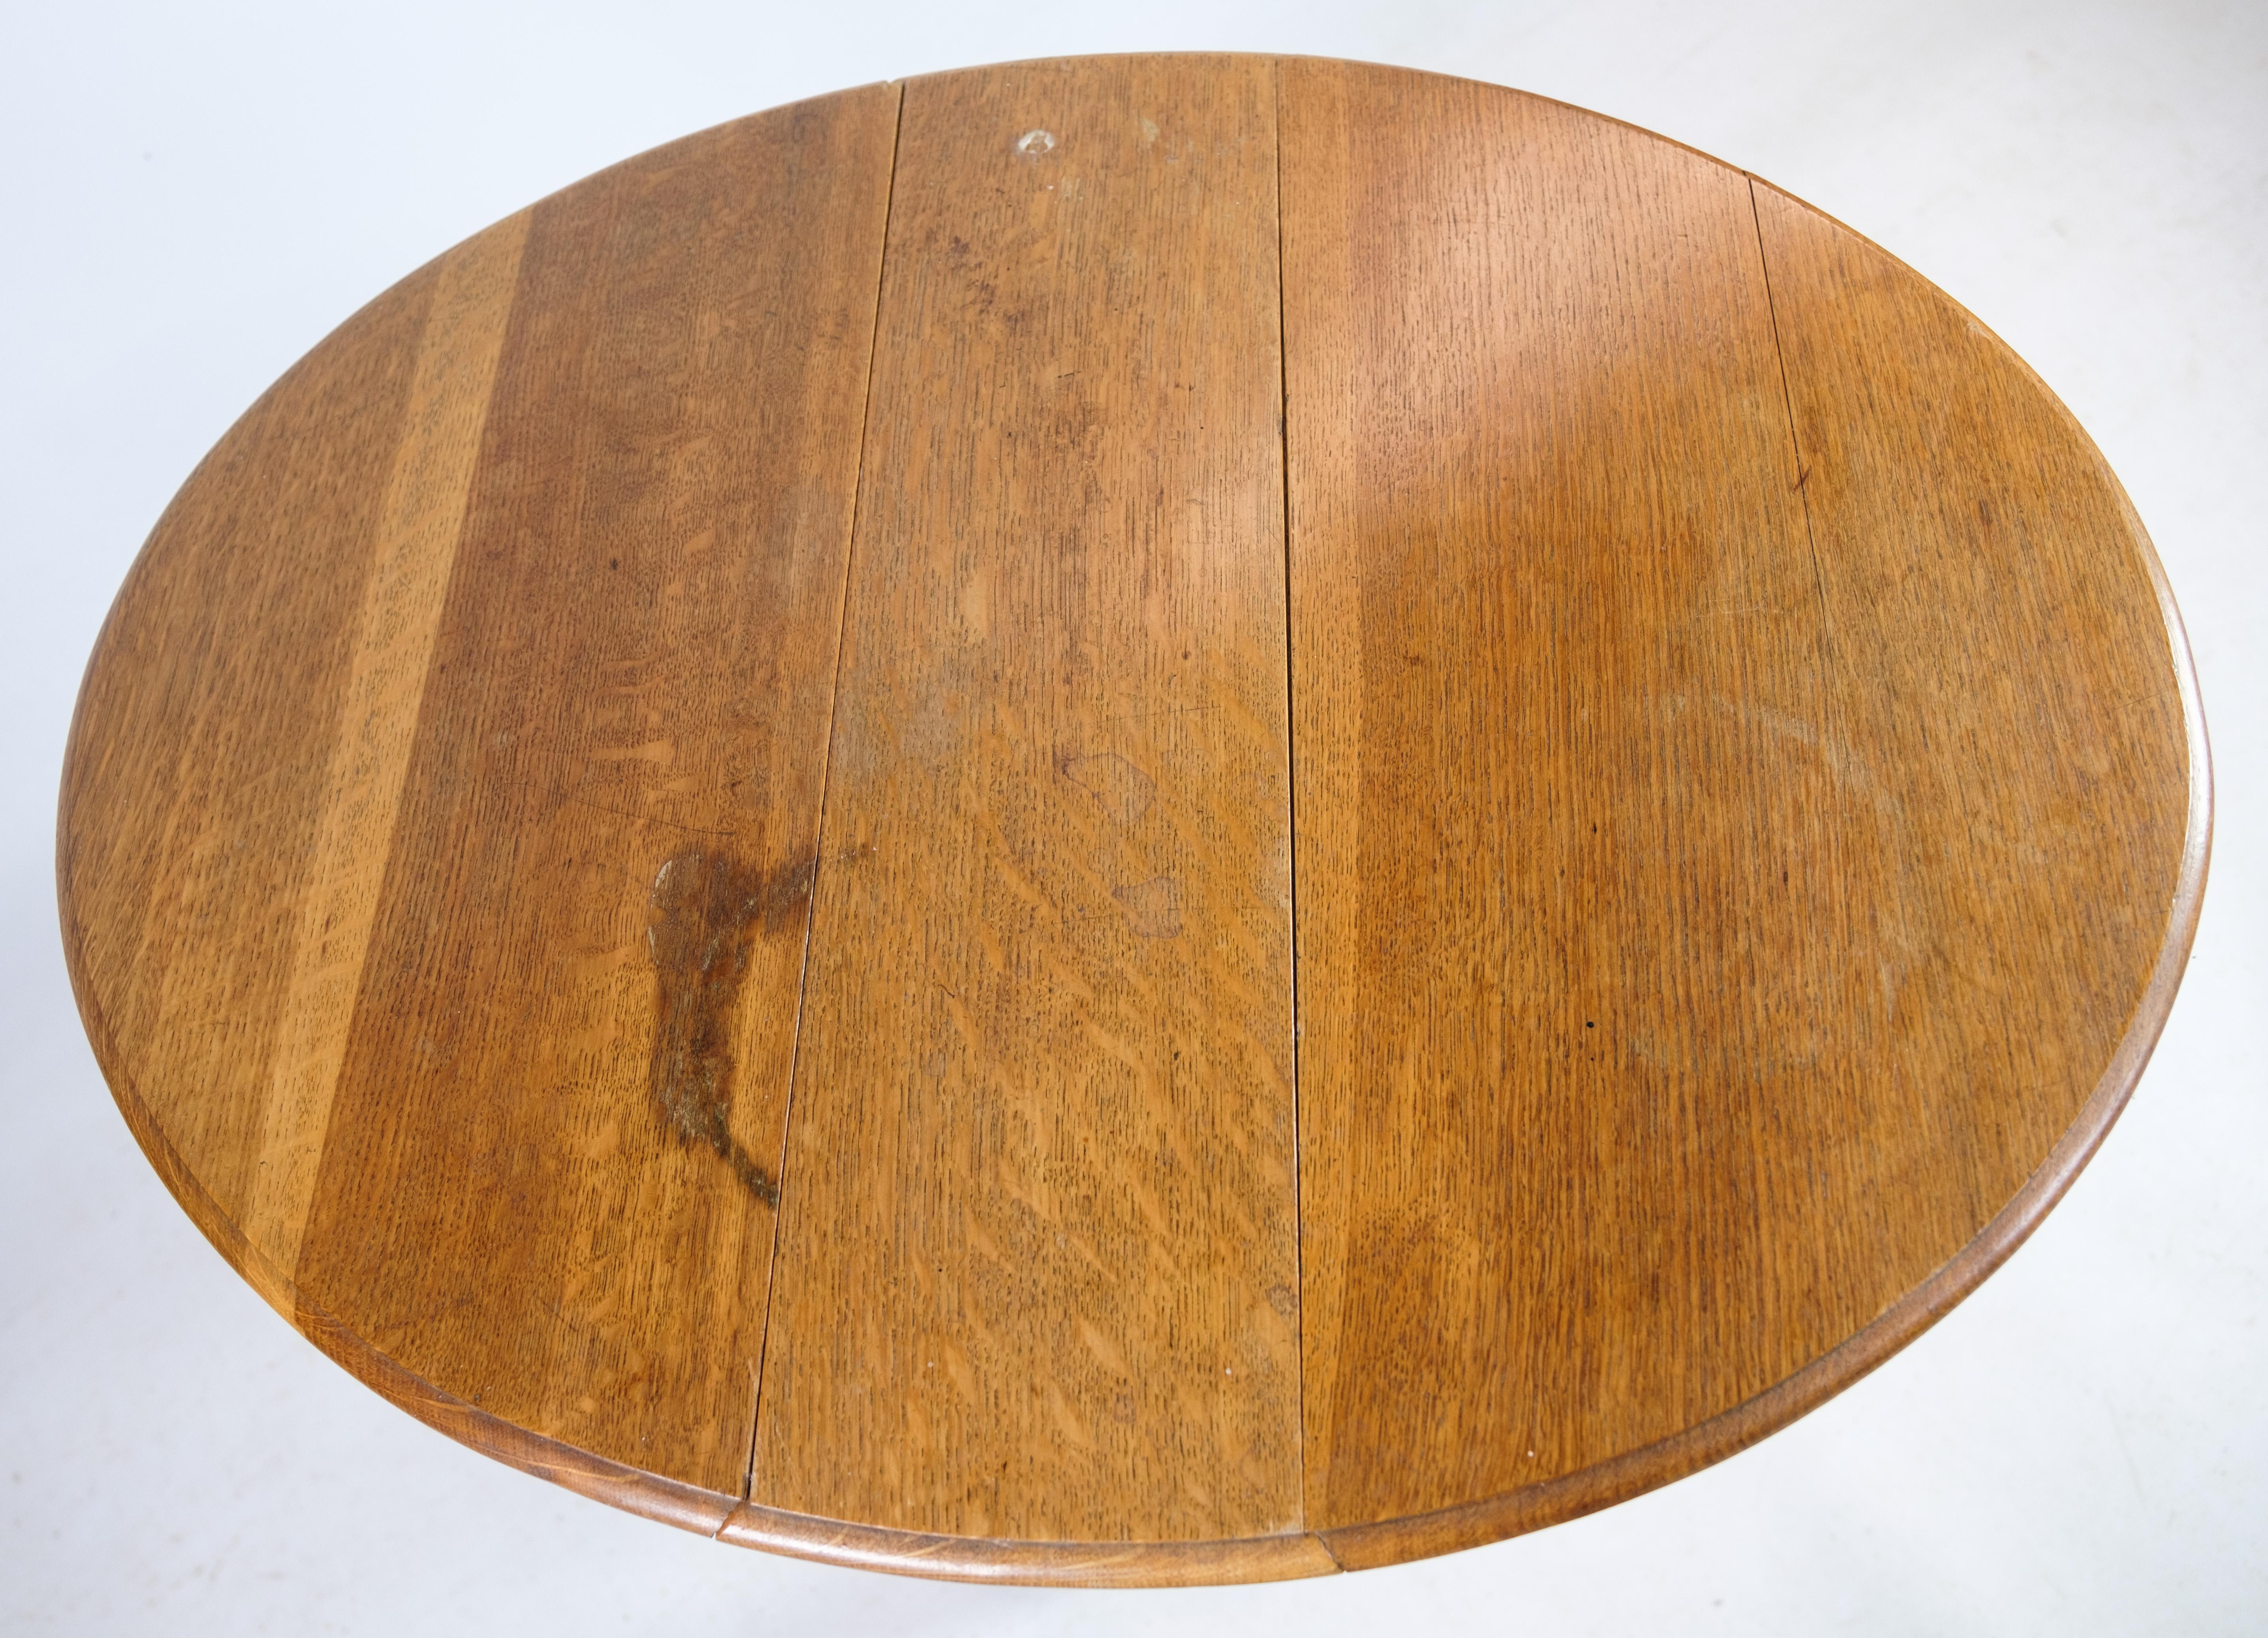 Scandinavian Modern Folding Table Made In Oak From 1890s For Sale